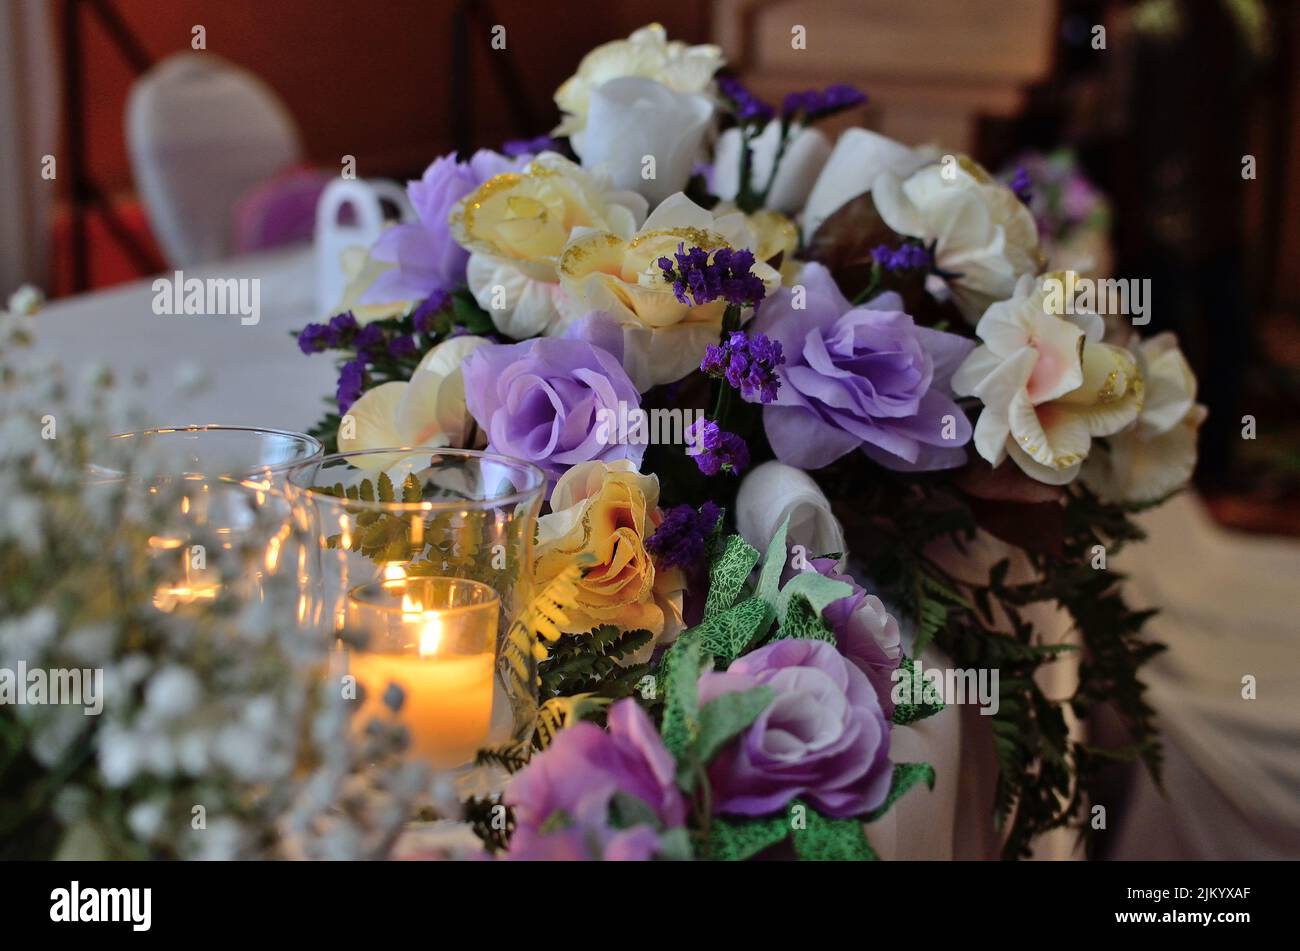 Ein schönes dekoratives Blumenarrangement neben brennenden Kerzen auf einem Tisch Stockfoto